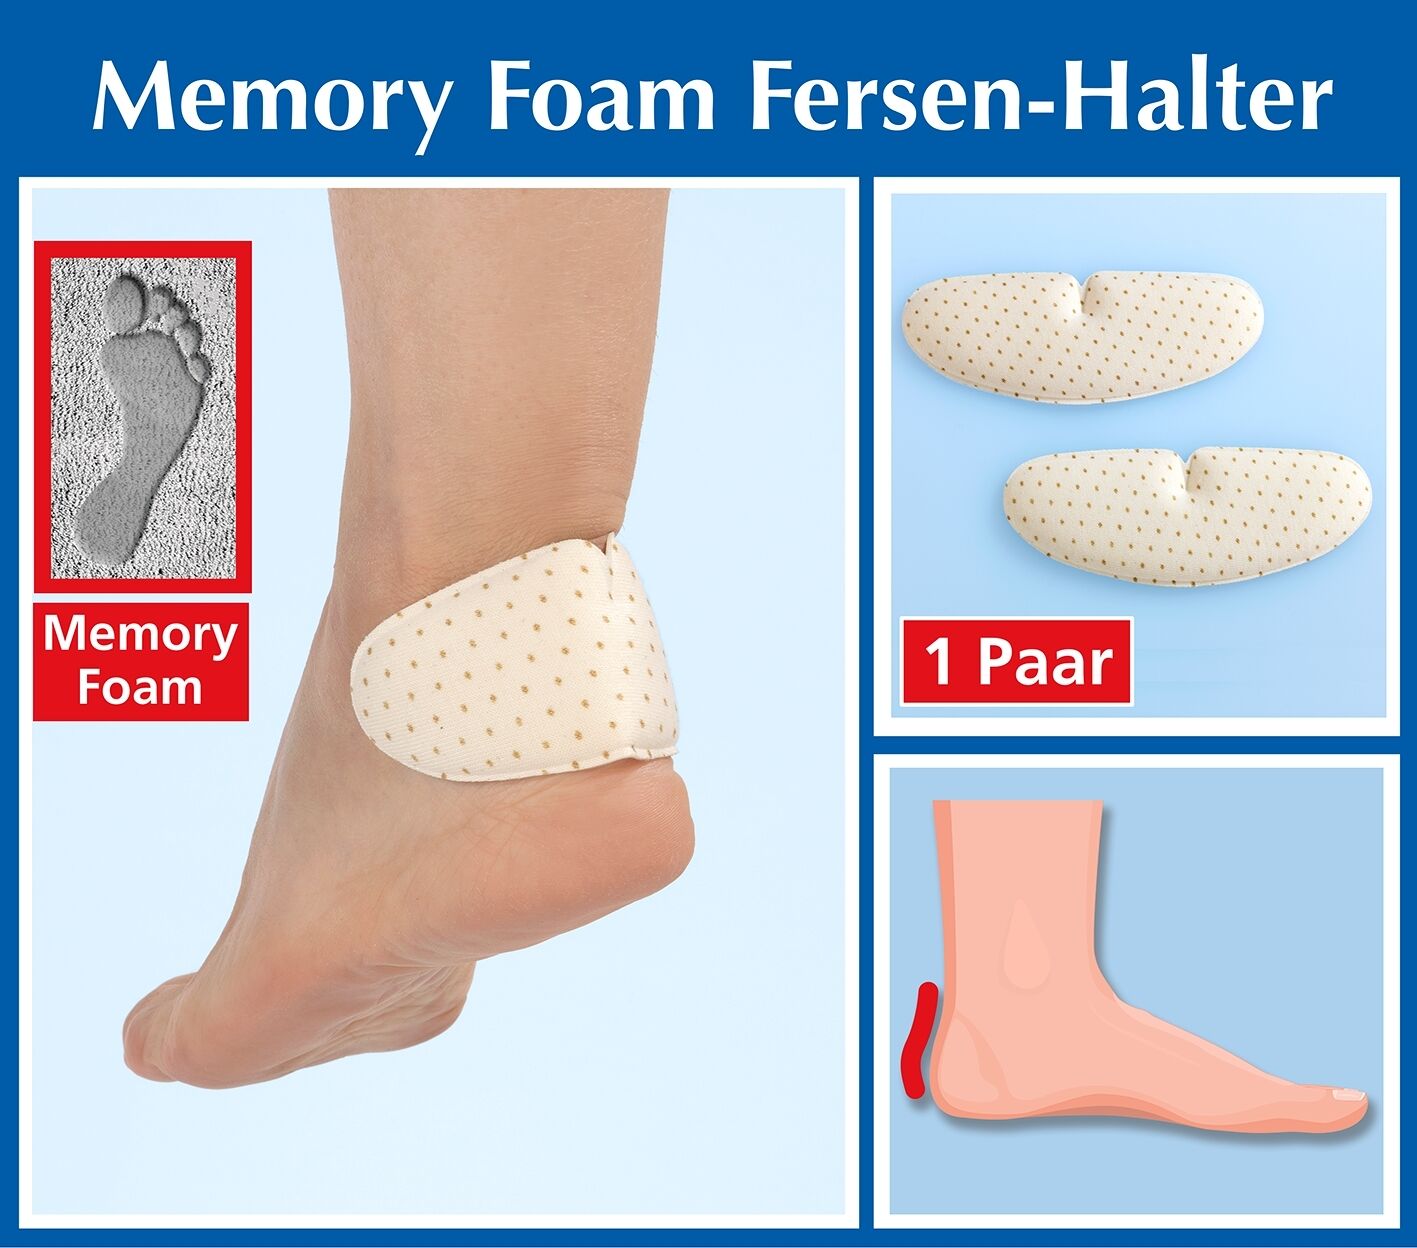 Memory Foam Fersen-Halter, 1 Paar